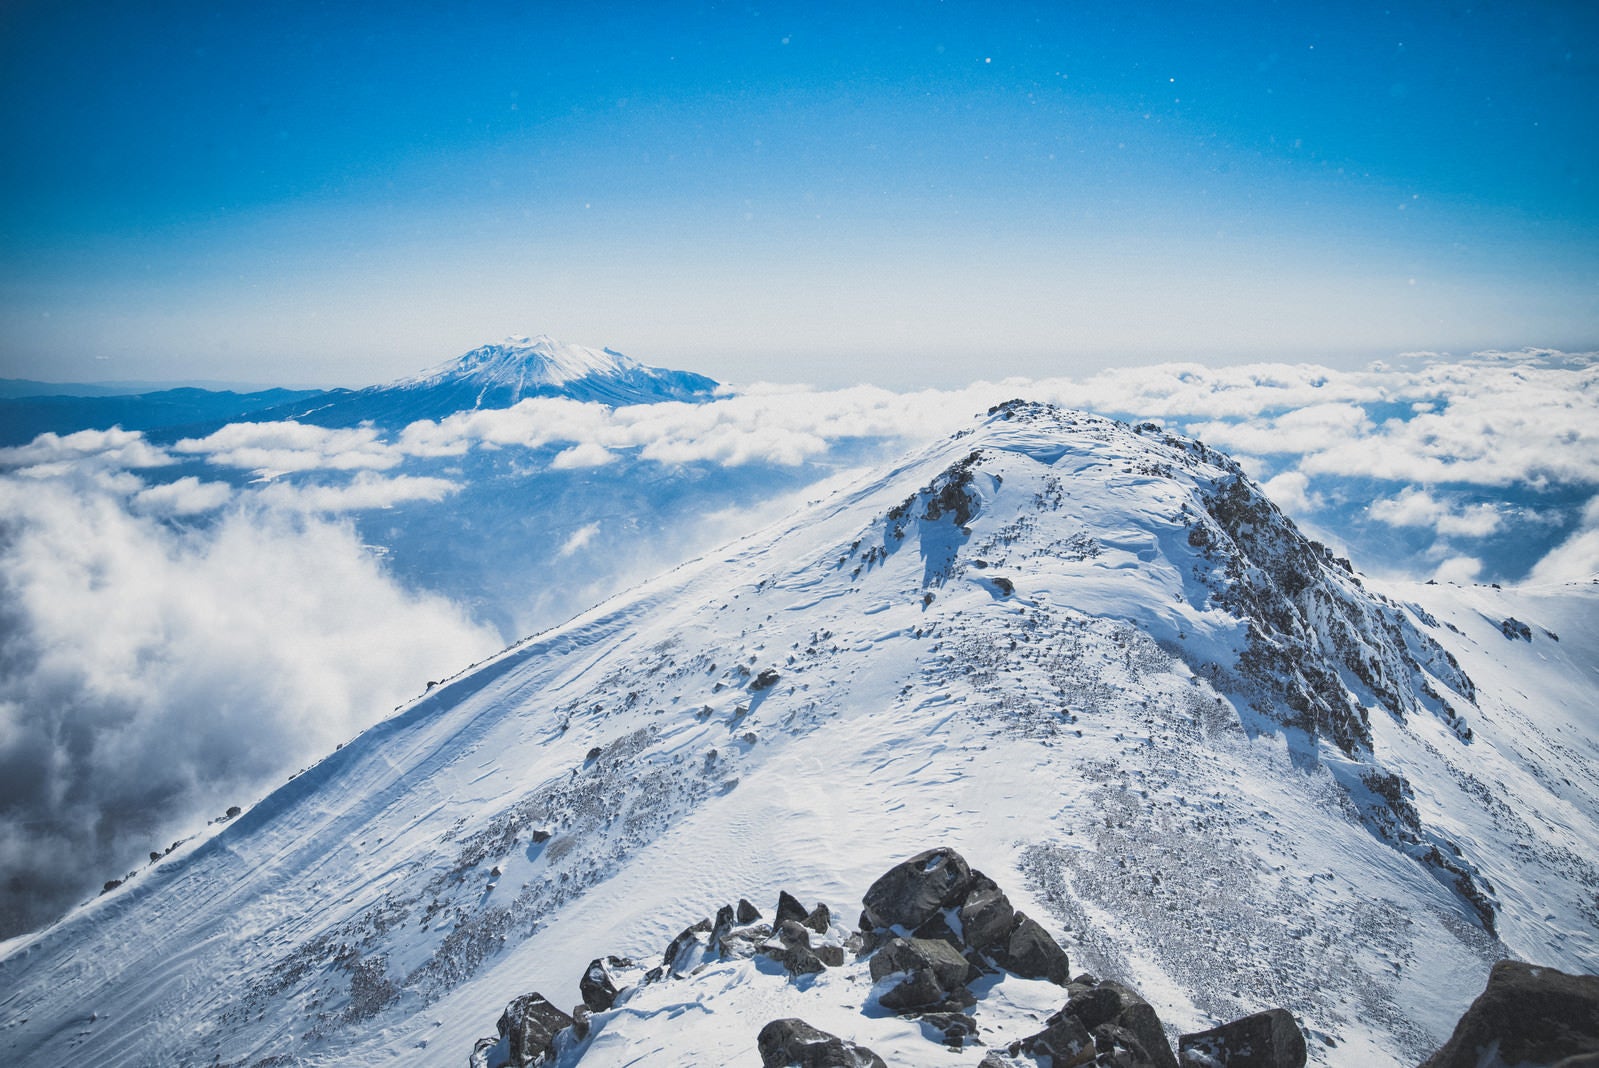 「薬師岳と御嶽山のコラボレーション」の写真